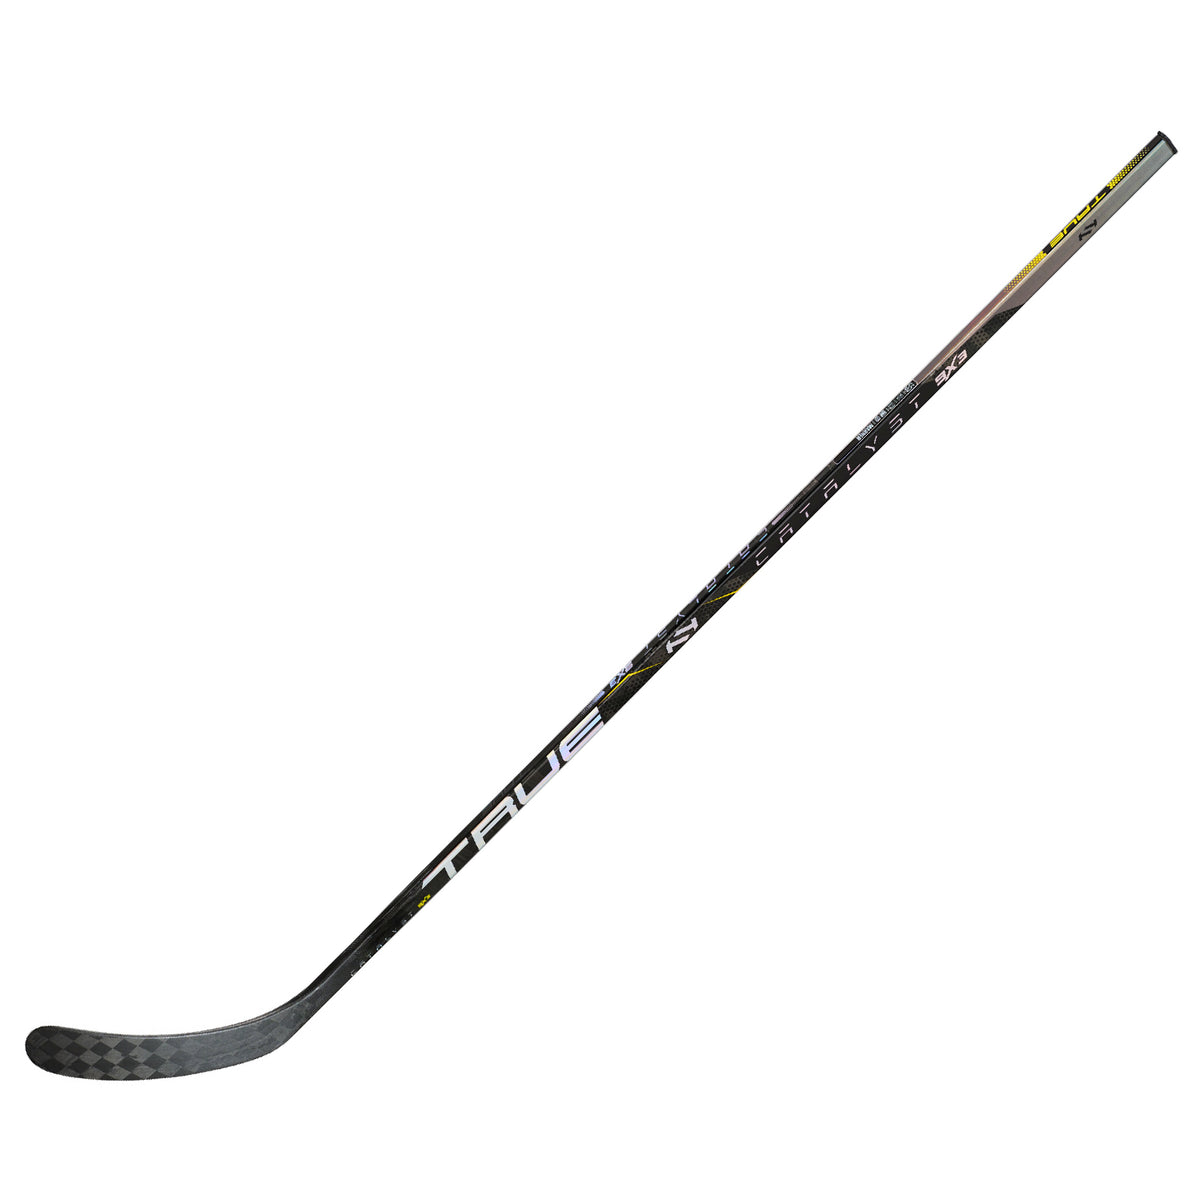 True Catalyst 9X3 Junior Hockey Stick